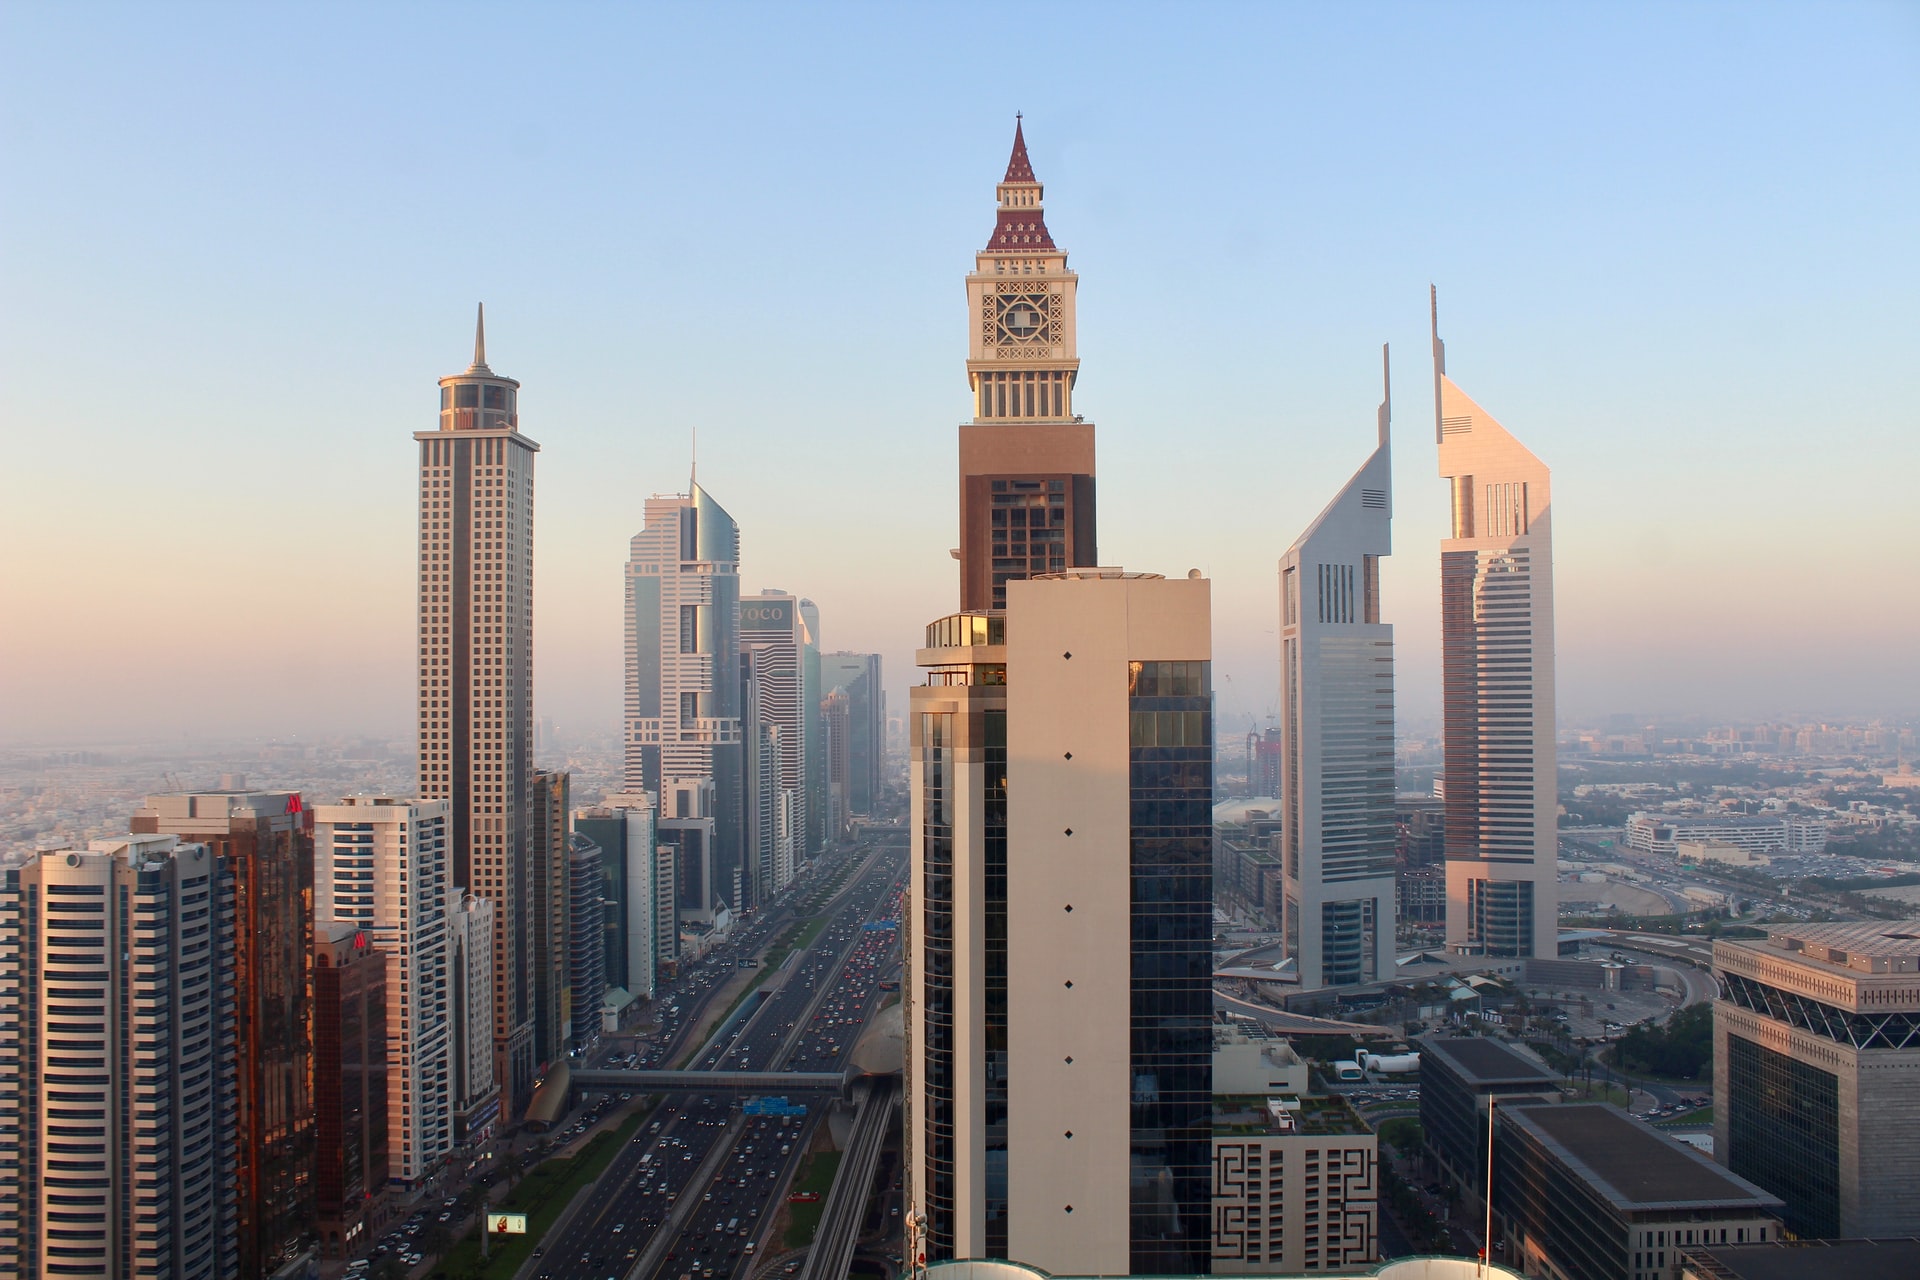 沙特钟楼大厦图片